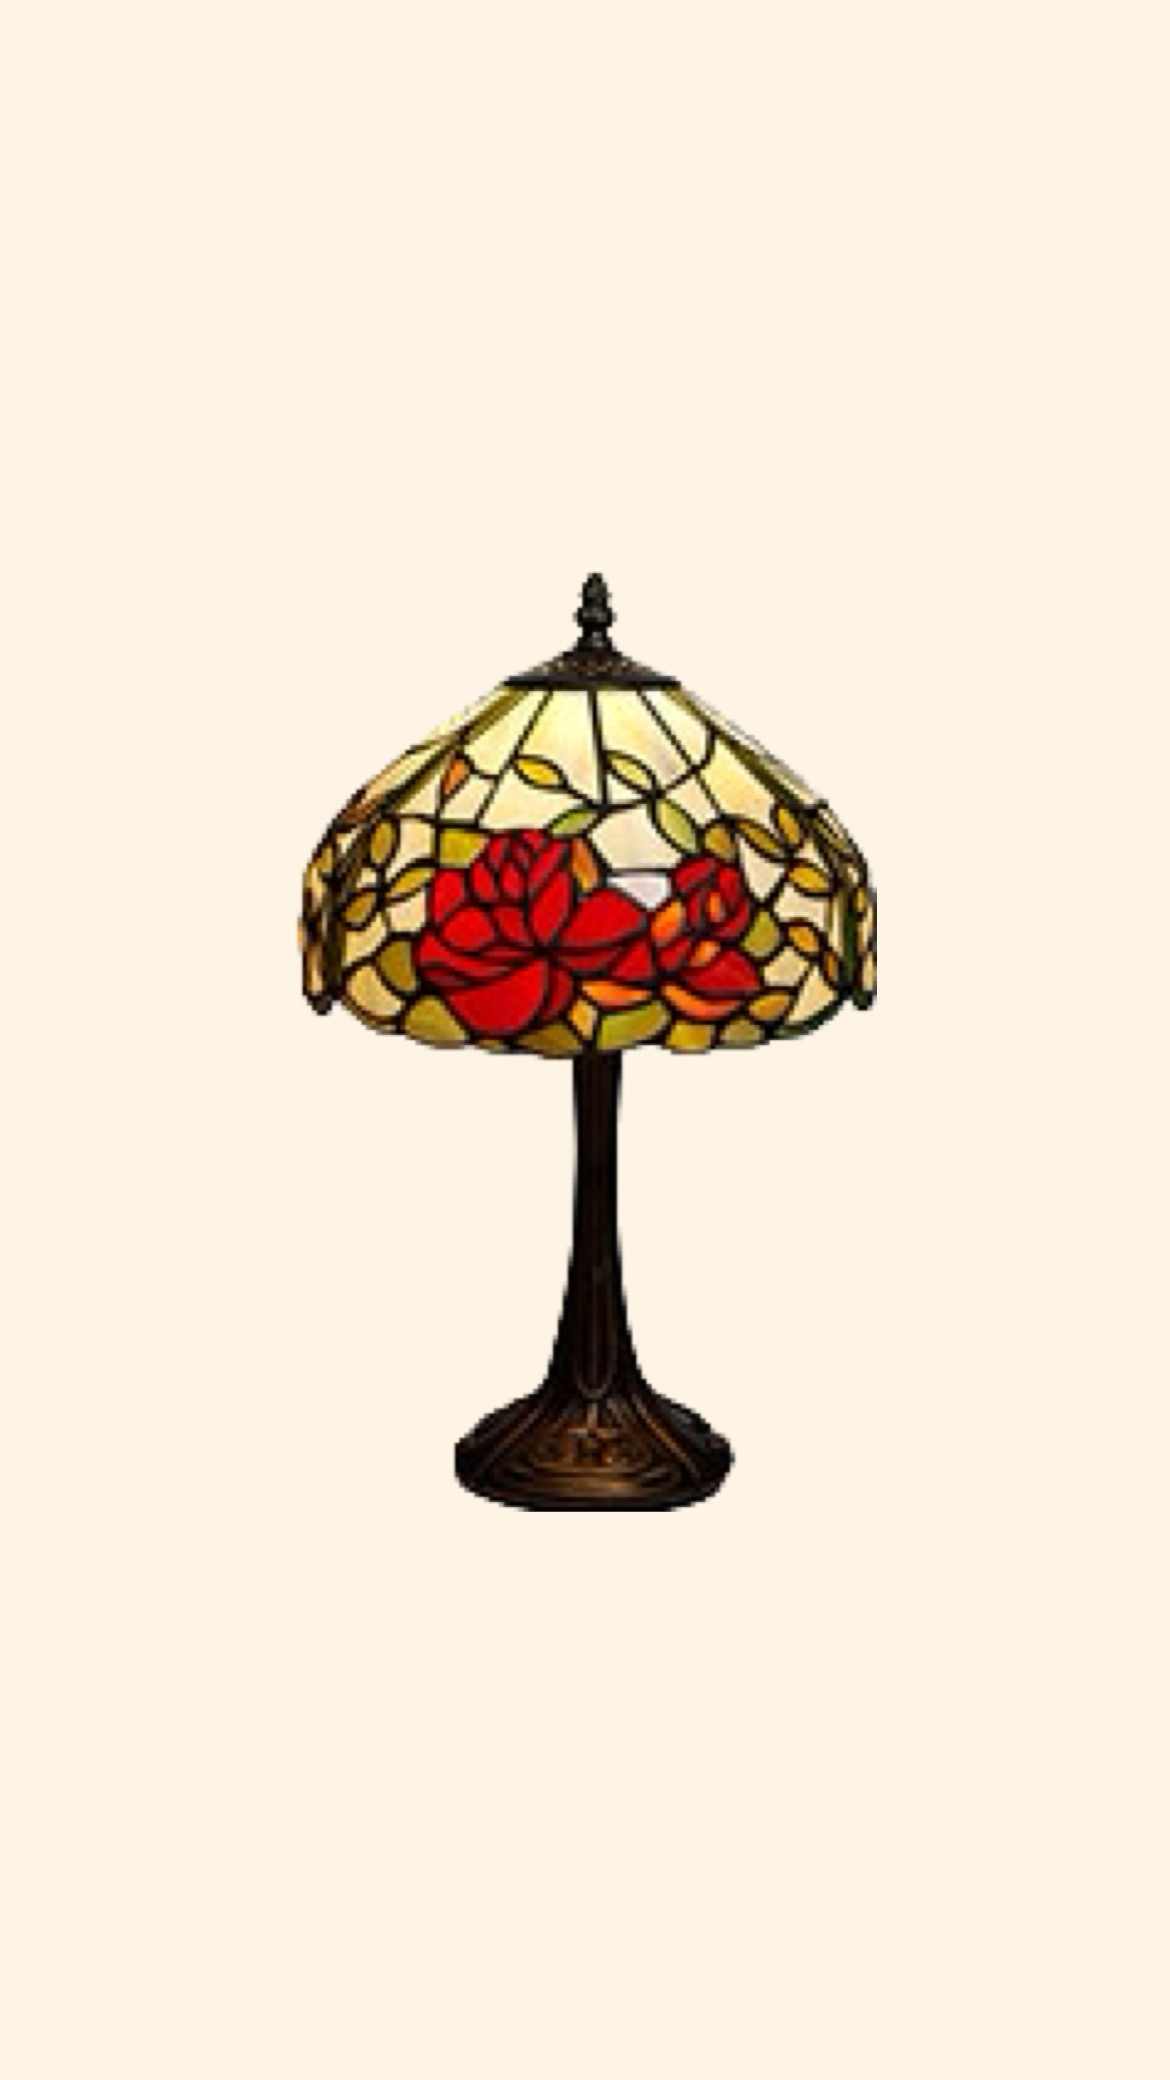 Tiffanylampa med Rosor 25cm